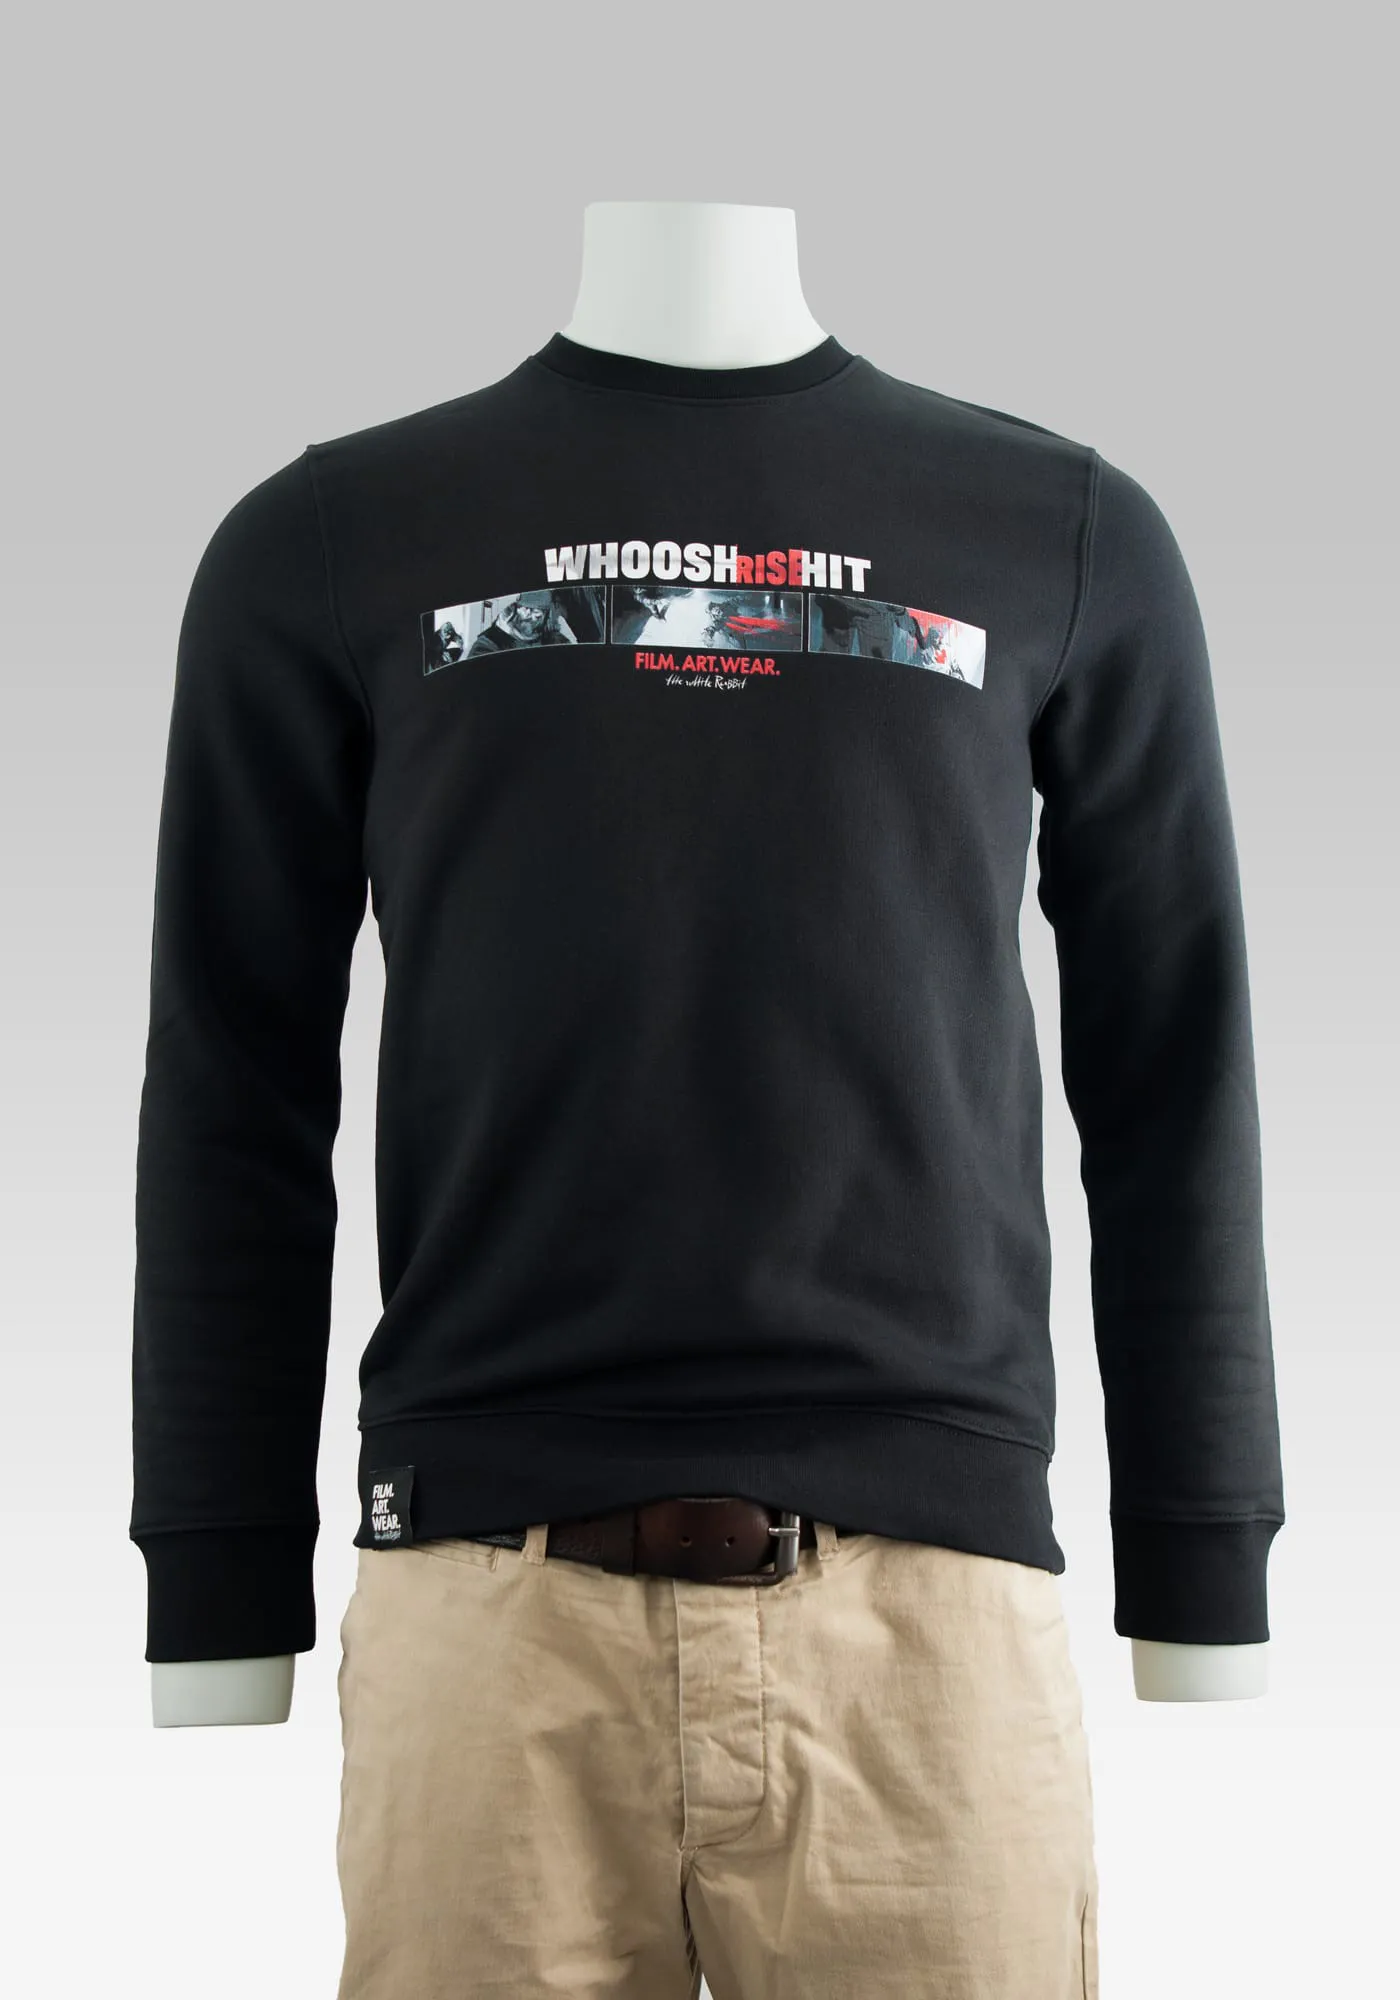 Sweater Hitman auf der Hollowpuppe in Farbe schwarz in Frontansicht